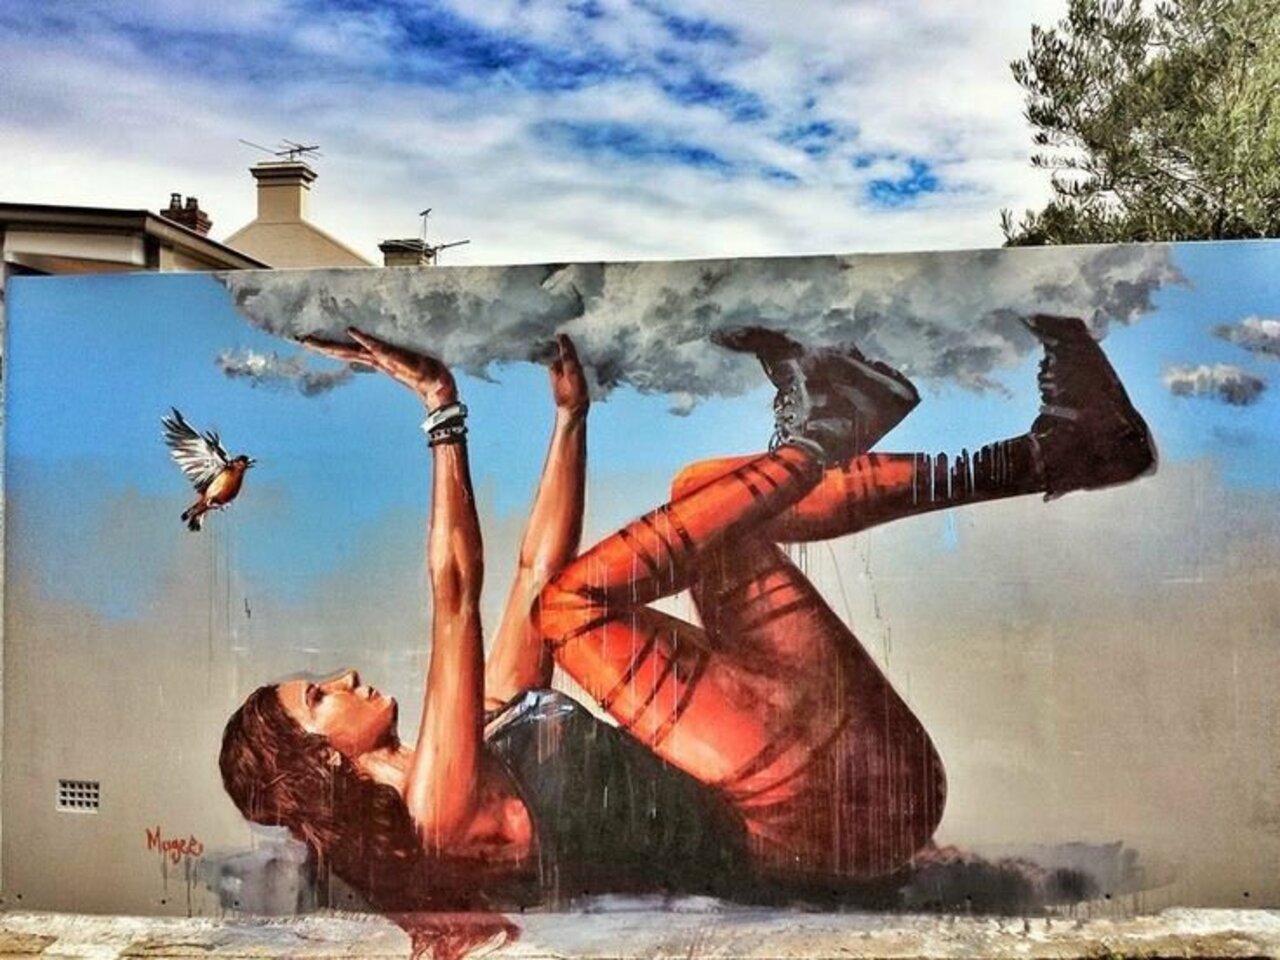 Mural by Fintan Magee, Sydney, Australia #Streetart #urbanart #graffiti #mural #art #Sydney #Australia https://t.co/OUVG9vlyp1